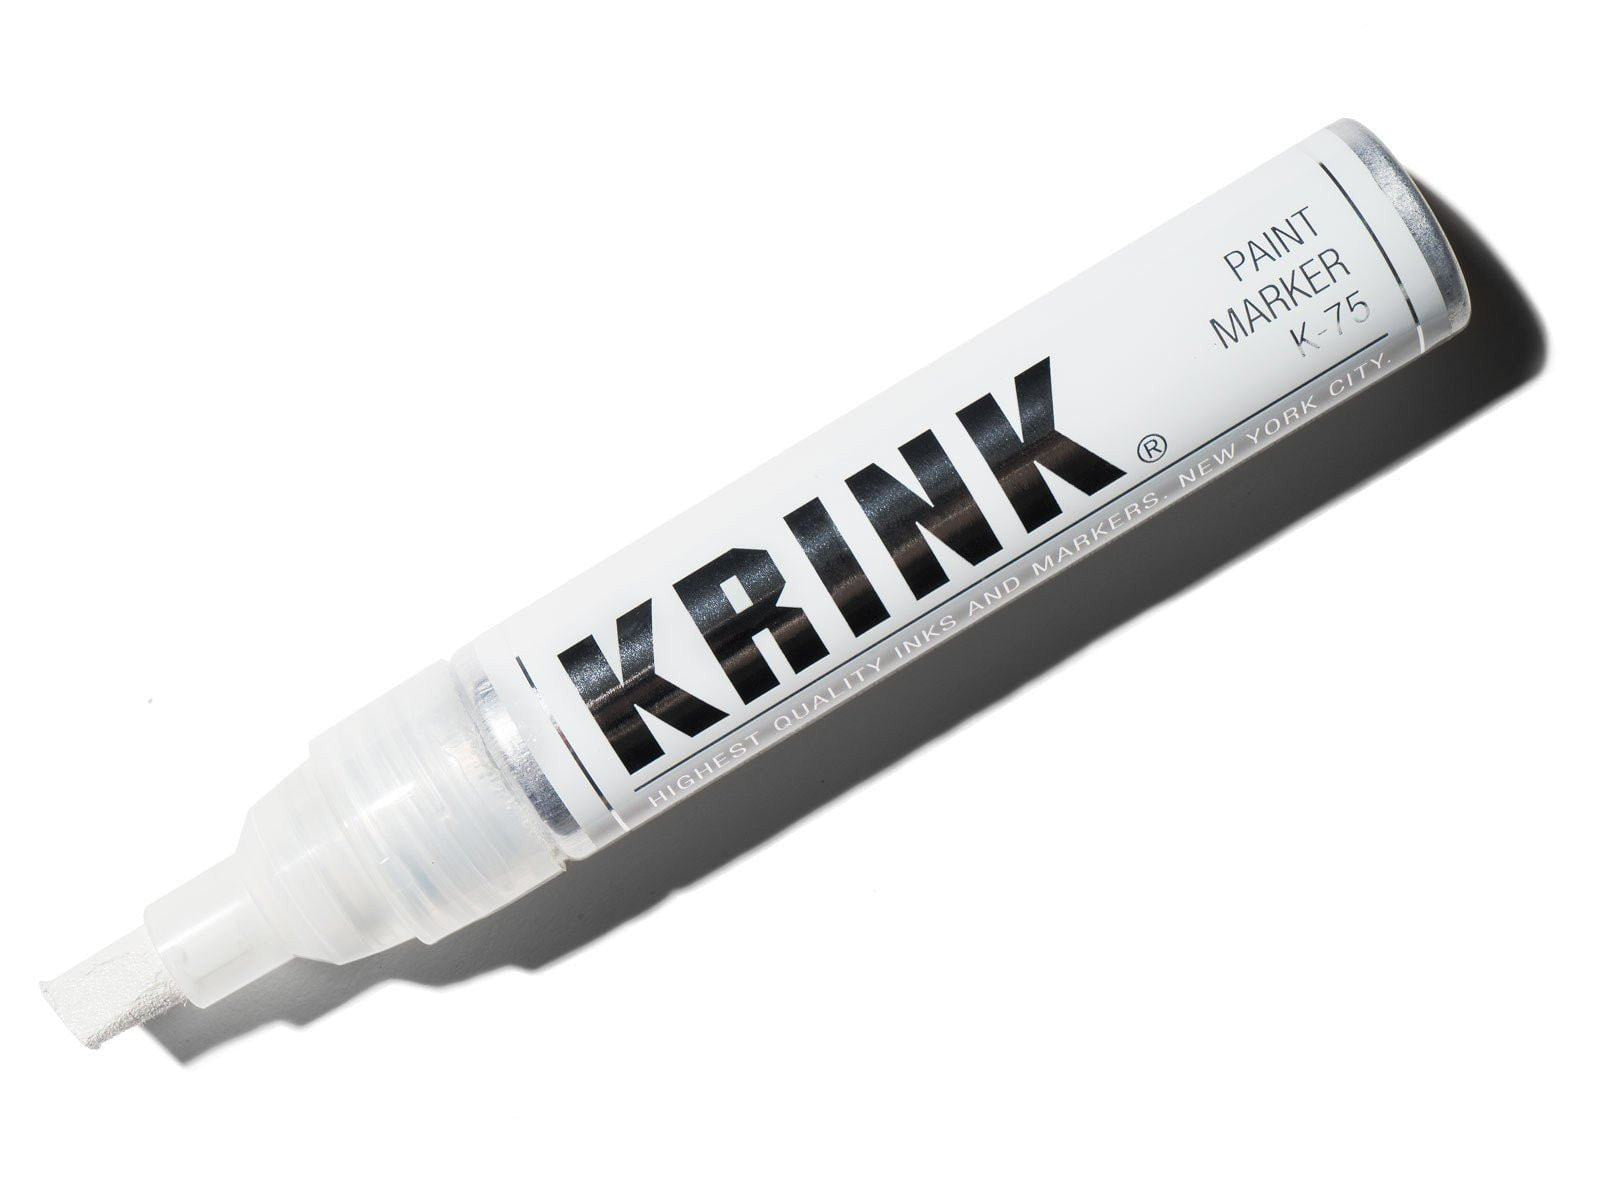 Krink K-75 Paint Marker